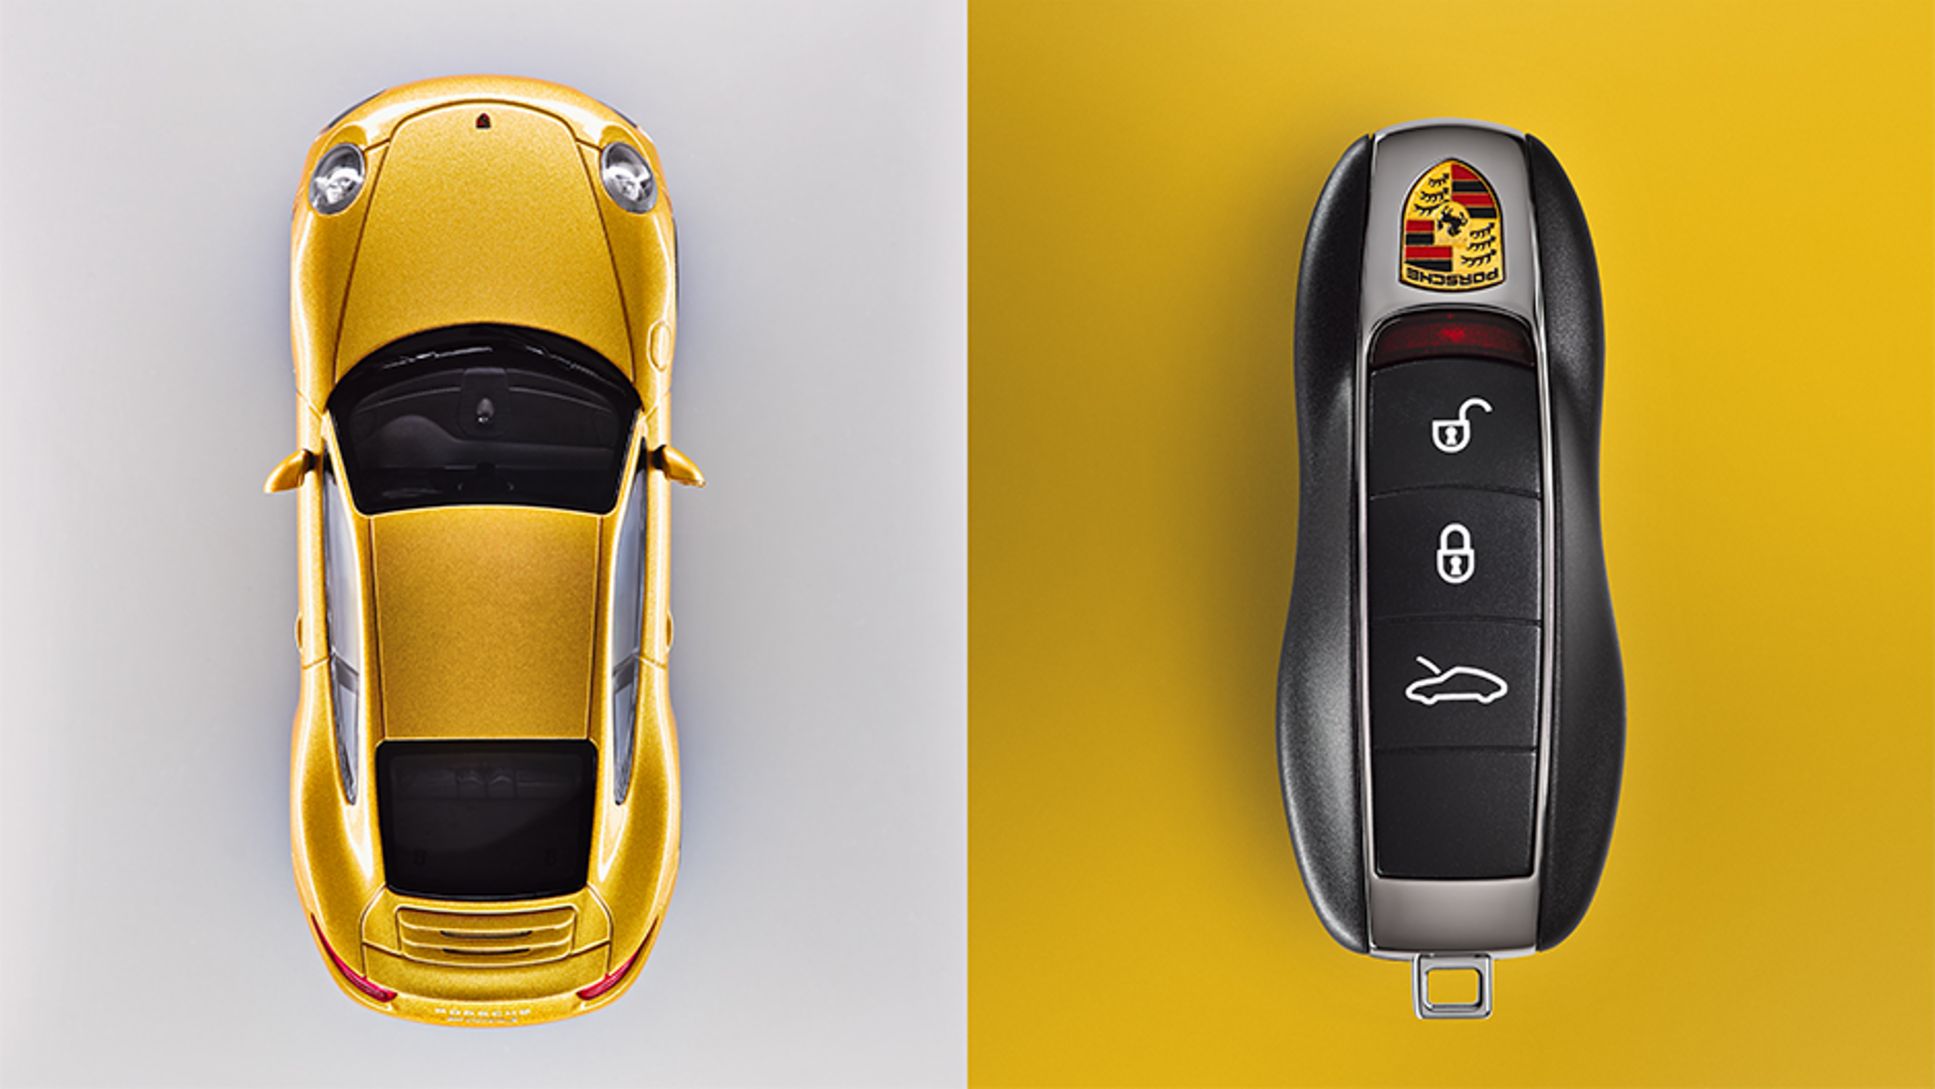 991: Der aktuelle Schlüssel besitzt eine integrierte Funk­tionalität für Porsche Entry & Drive, ein baureihenspezifisches Tastenfeld und die neueste Verschlüsselungstechnologie